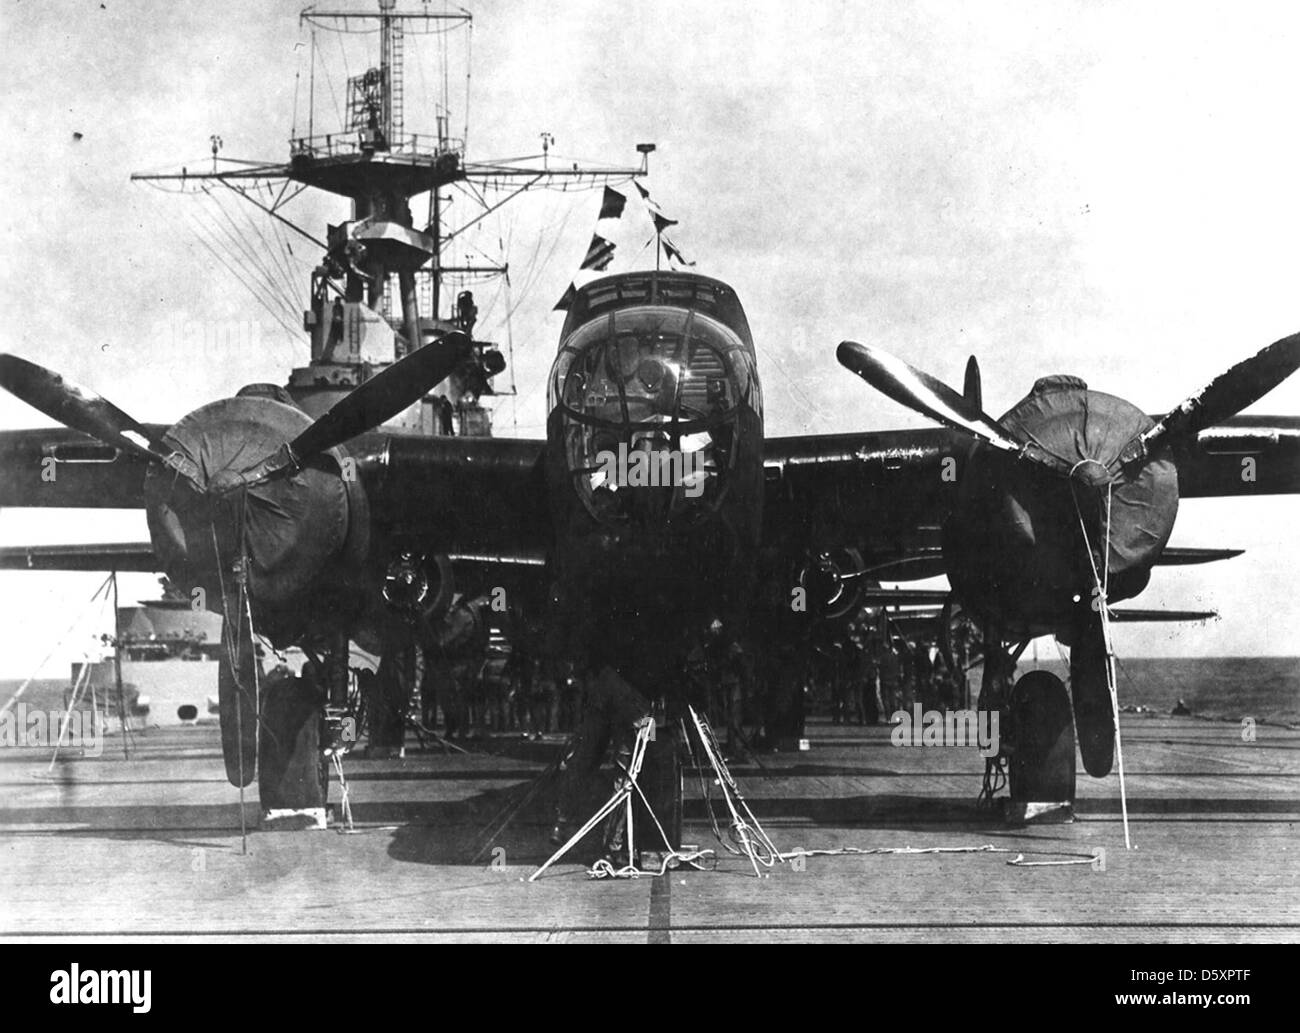 18 avril 1942 : Premier raid aérien sur Tokyo par le colonel Doolittle A-crew-member-checks-the-lashings-on-his-north-american-b-25b-mitchell-D5XPTF